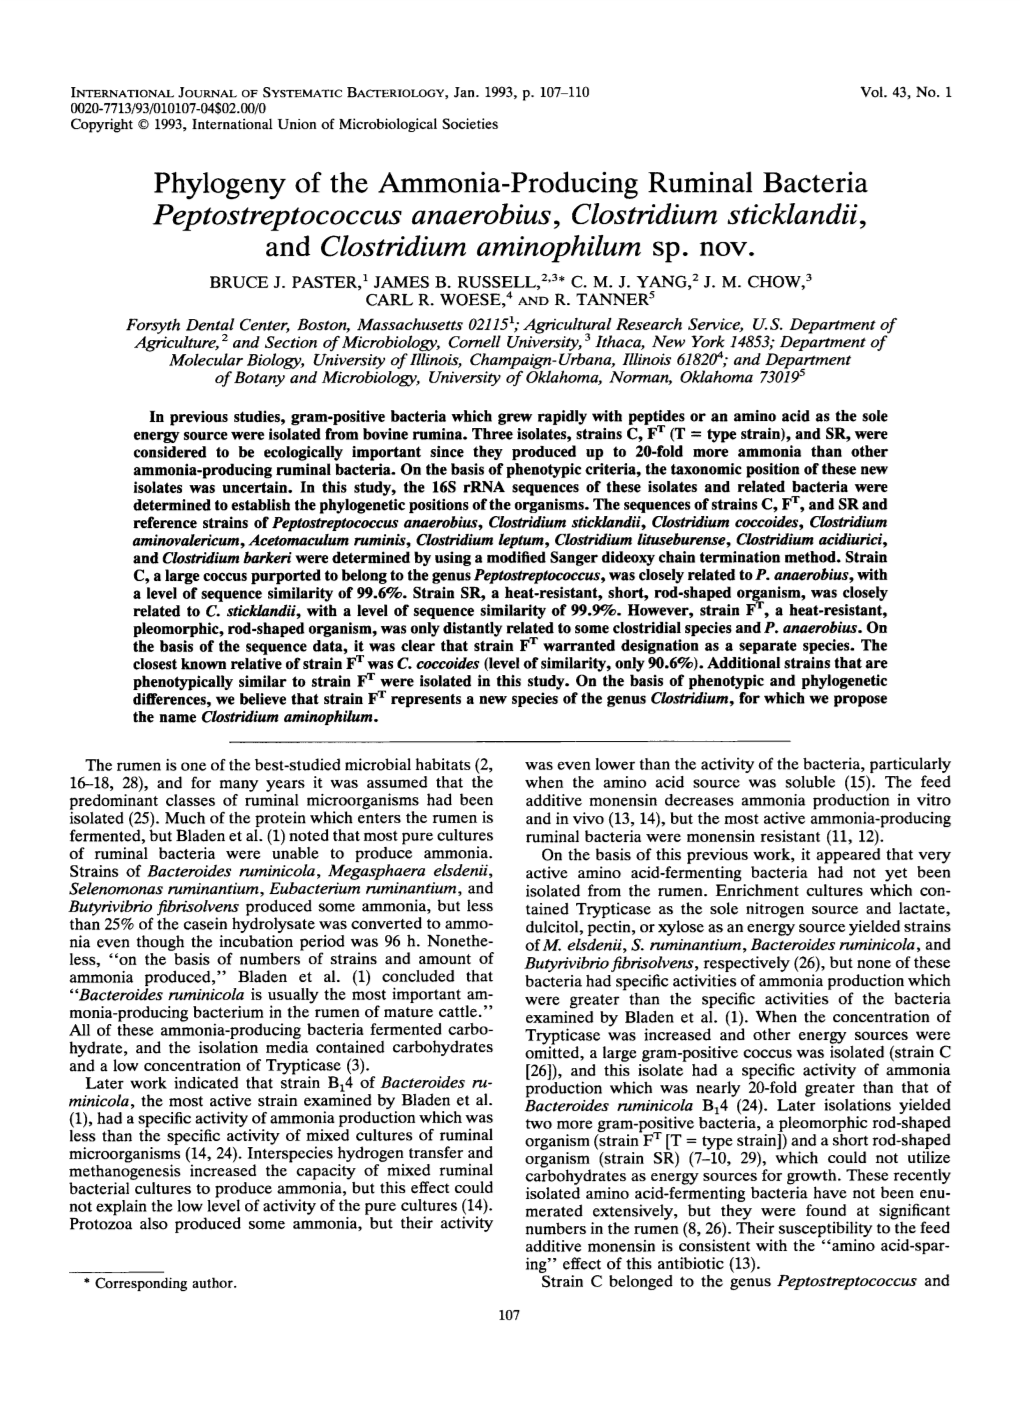 Phylogeny of the Ammonia-Producing Ruminal Bacteria Peptostreptococcus Anaerobius, Clostridium Sticklandii, and Clostridium Aminophilum Sp